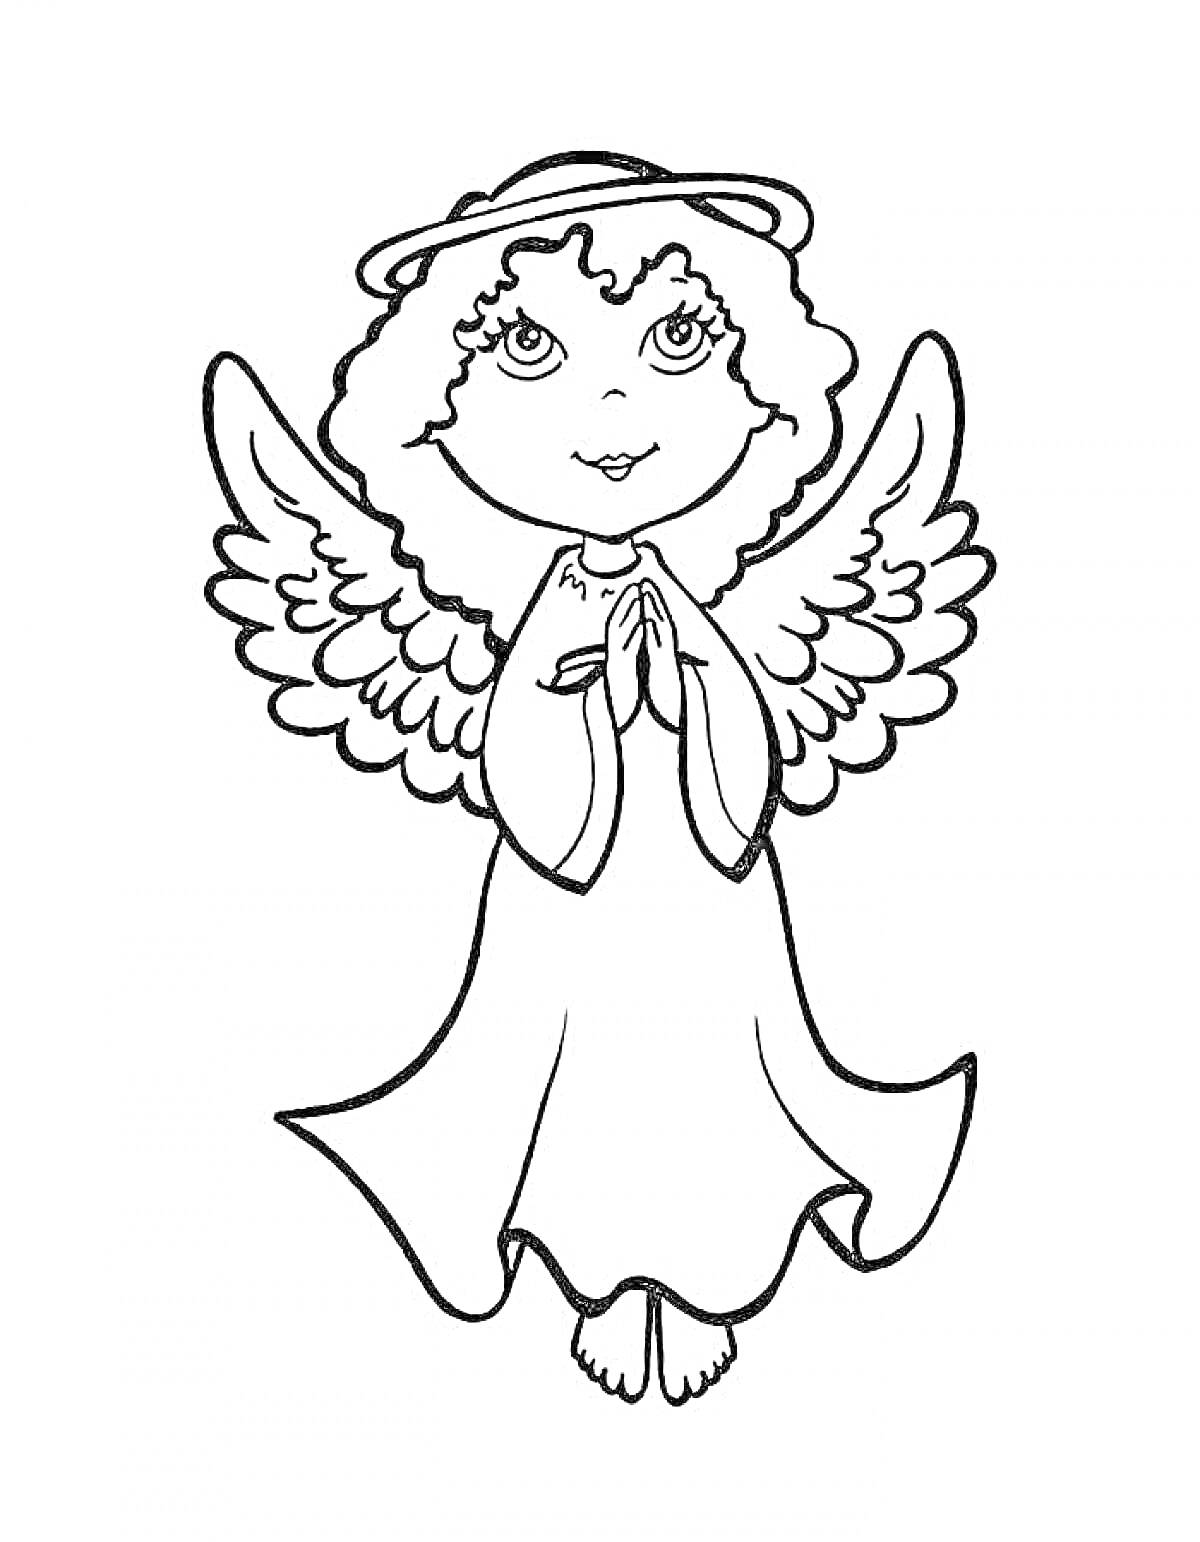 Раскраска Ангел с кудрявыми волосами, в длинном платье, сложивший руки в молитве, с крыльями и нимбом